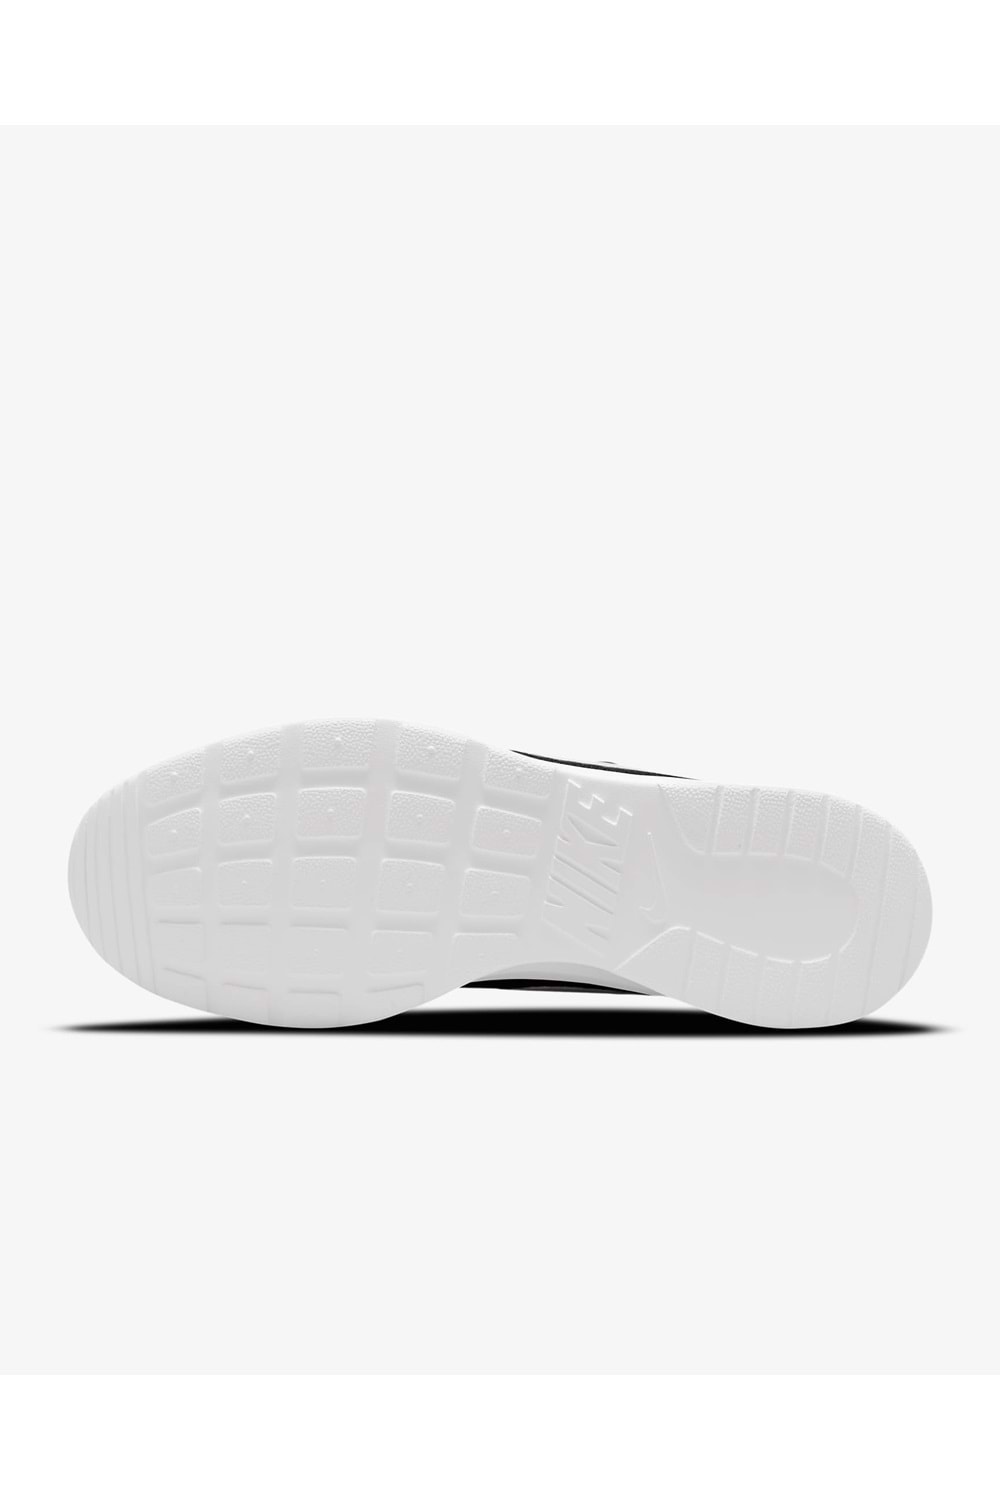 Nike Tanjun Erkek Siyah Günlük Spor Ayakkabı DJ6258-003